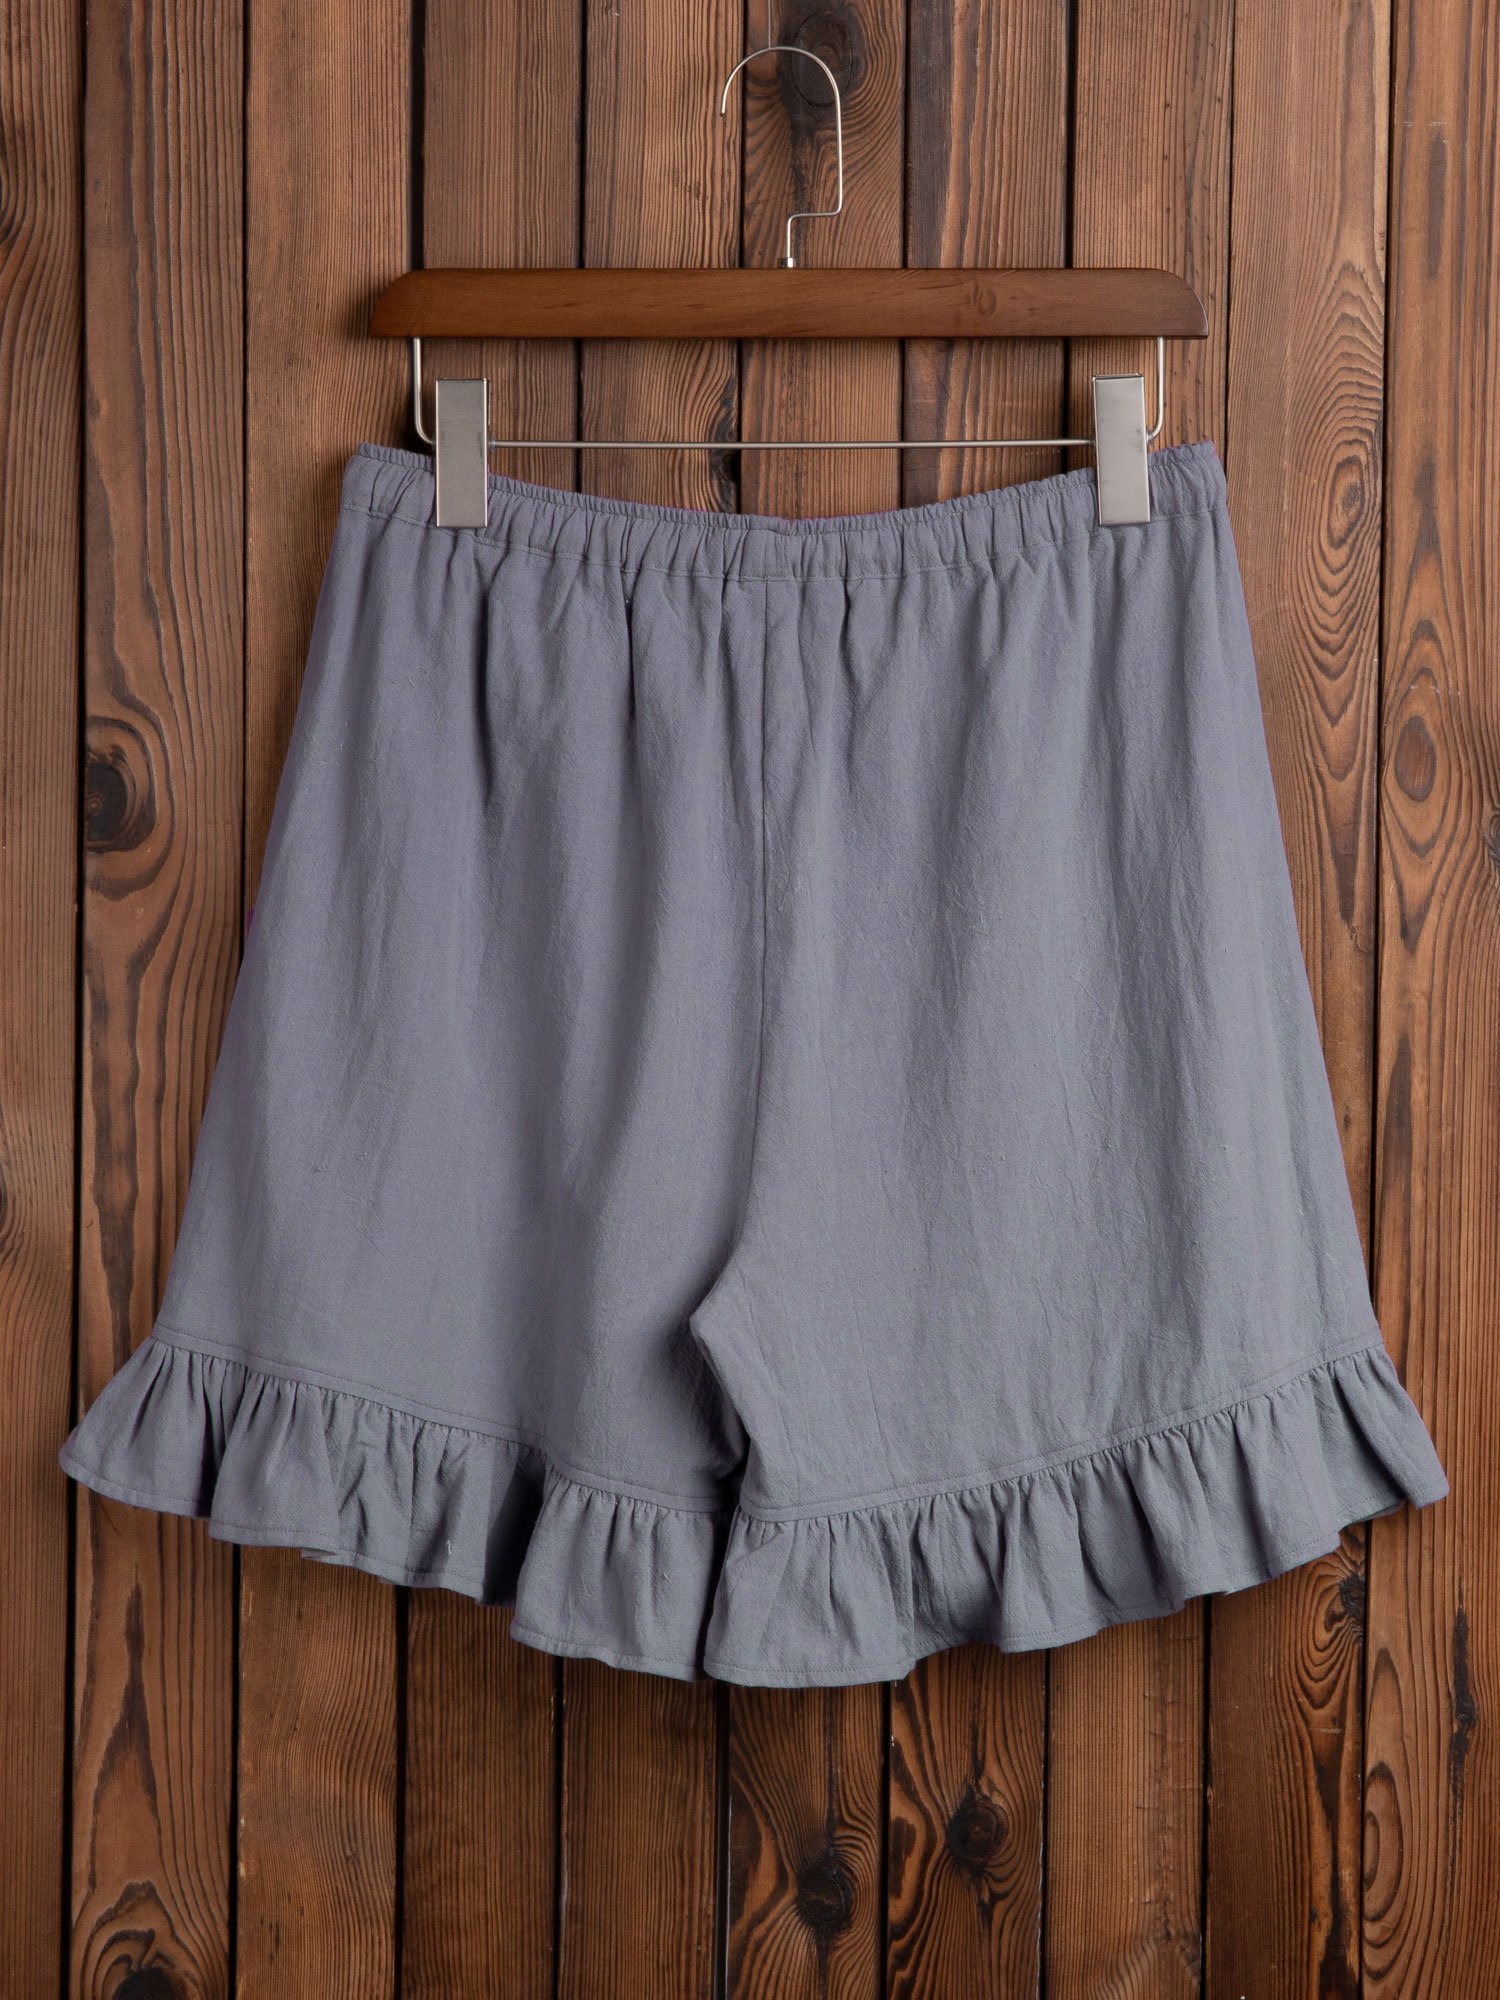 Women Folds Elastic Waistband Shorts Shorts with Pockets